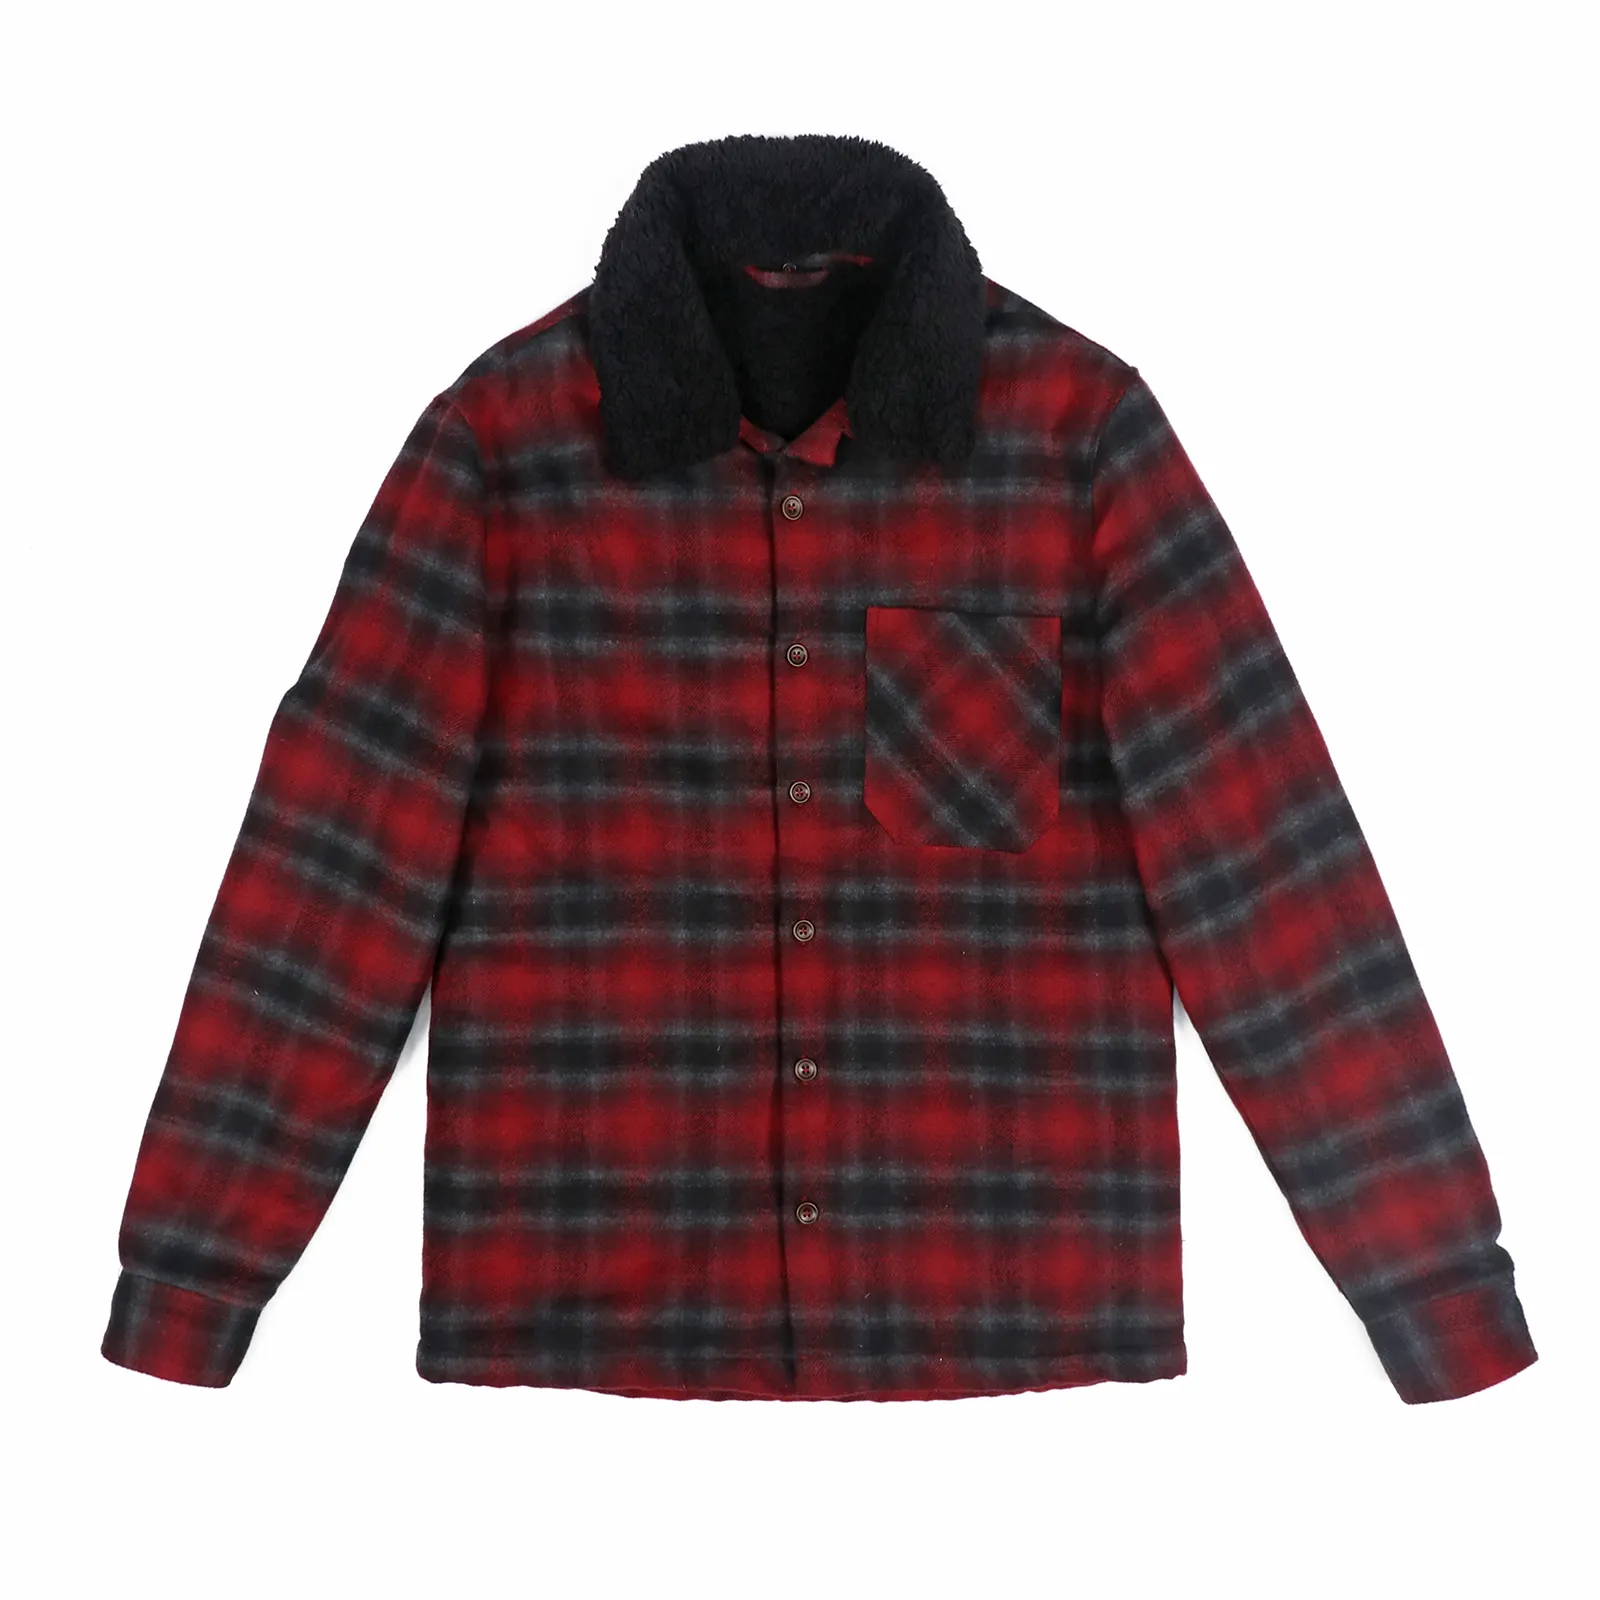 Oem botão de manga longa personalizado, atacado de inverno, outono, personalizado, oem, casual, preto, xadrez, camisas, jaquetas